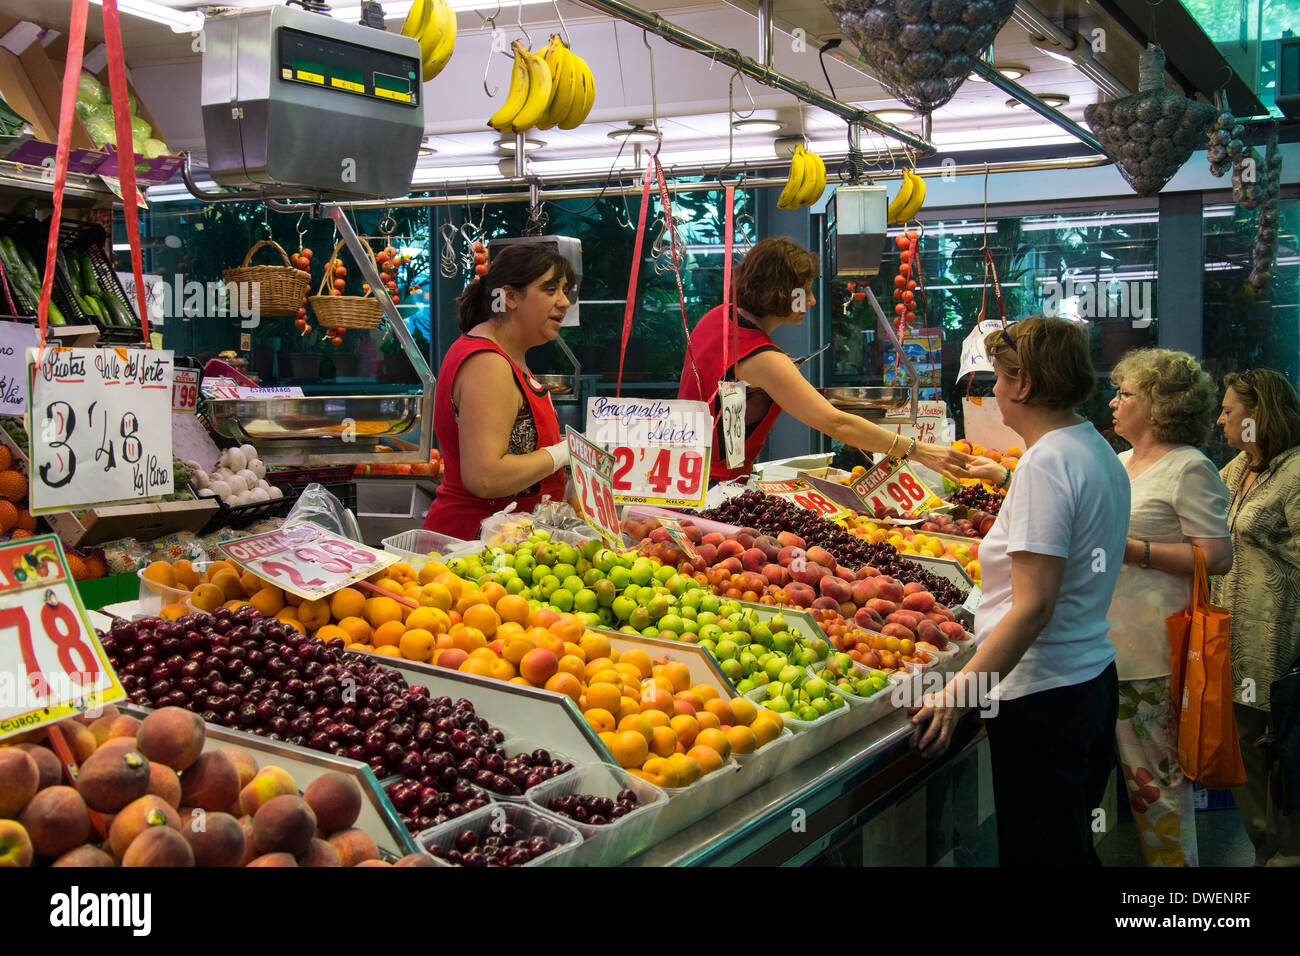 Le célèbre marché alimentaire Saint Joseph - l'Eixample de Barcelone - Catalogne Région de l'Espagne Banque D'Images